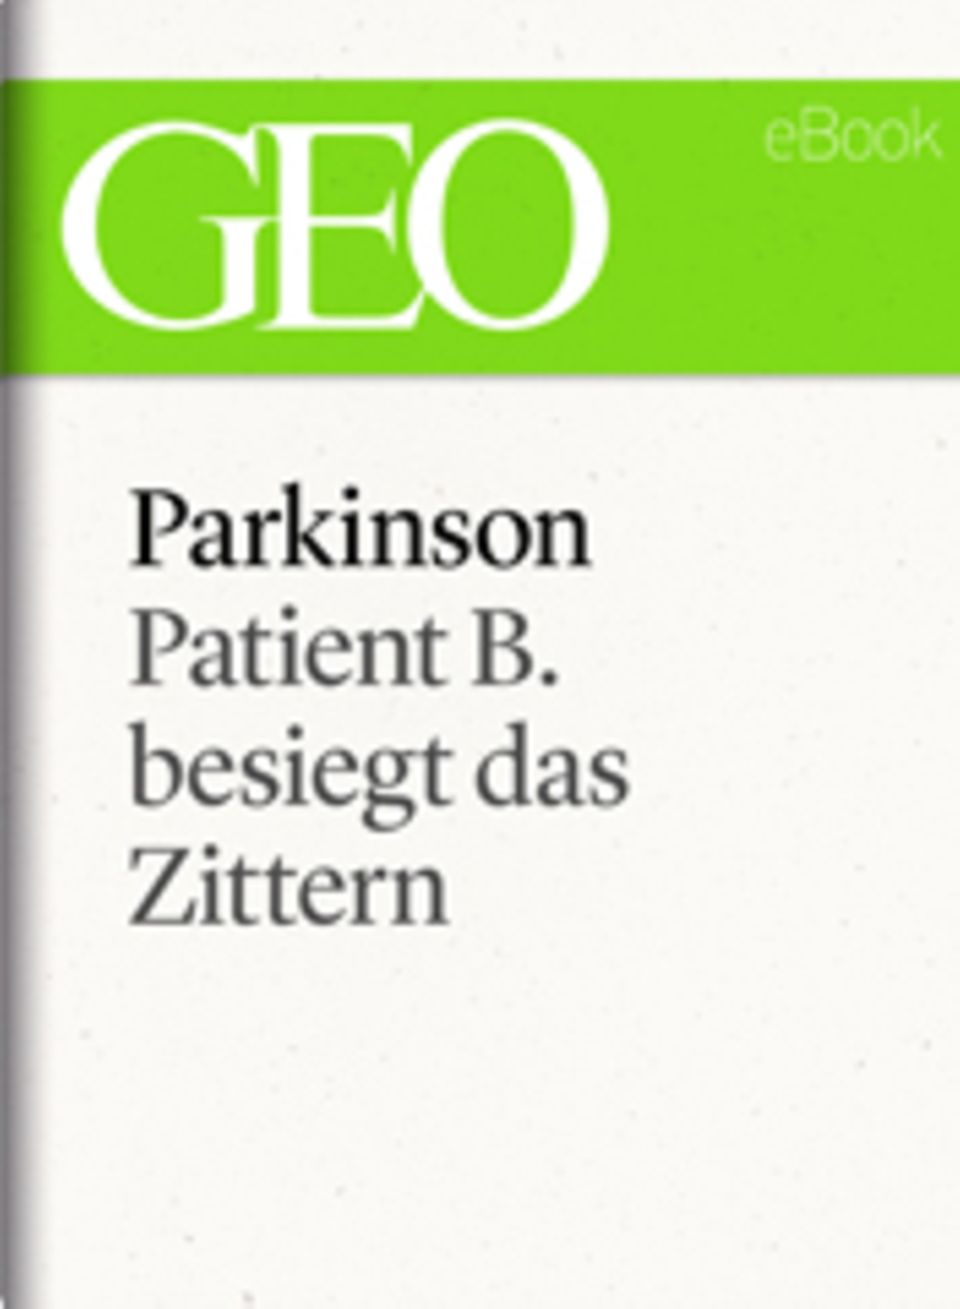 Patient B. besiegt das Zittern: GEO eBook "Parkinson"